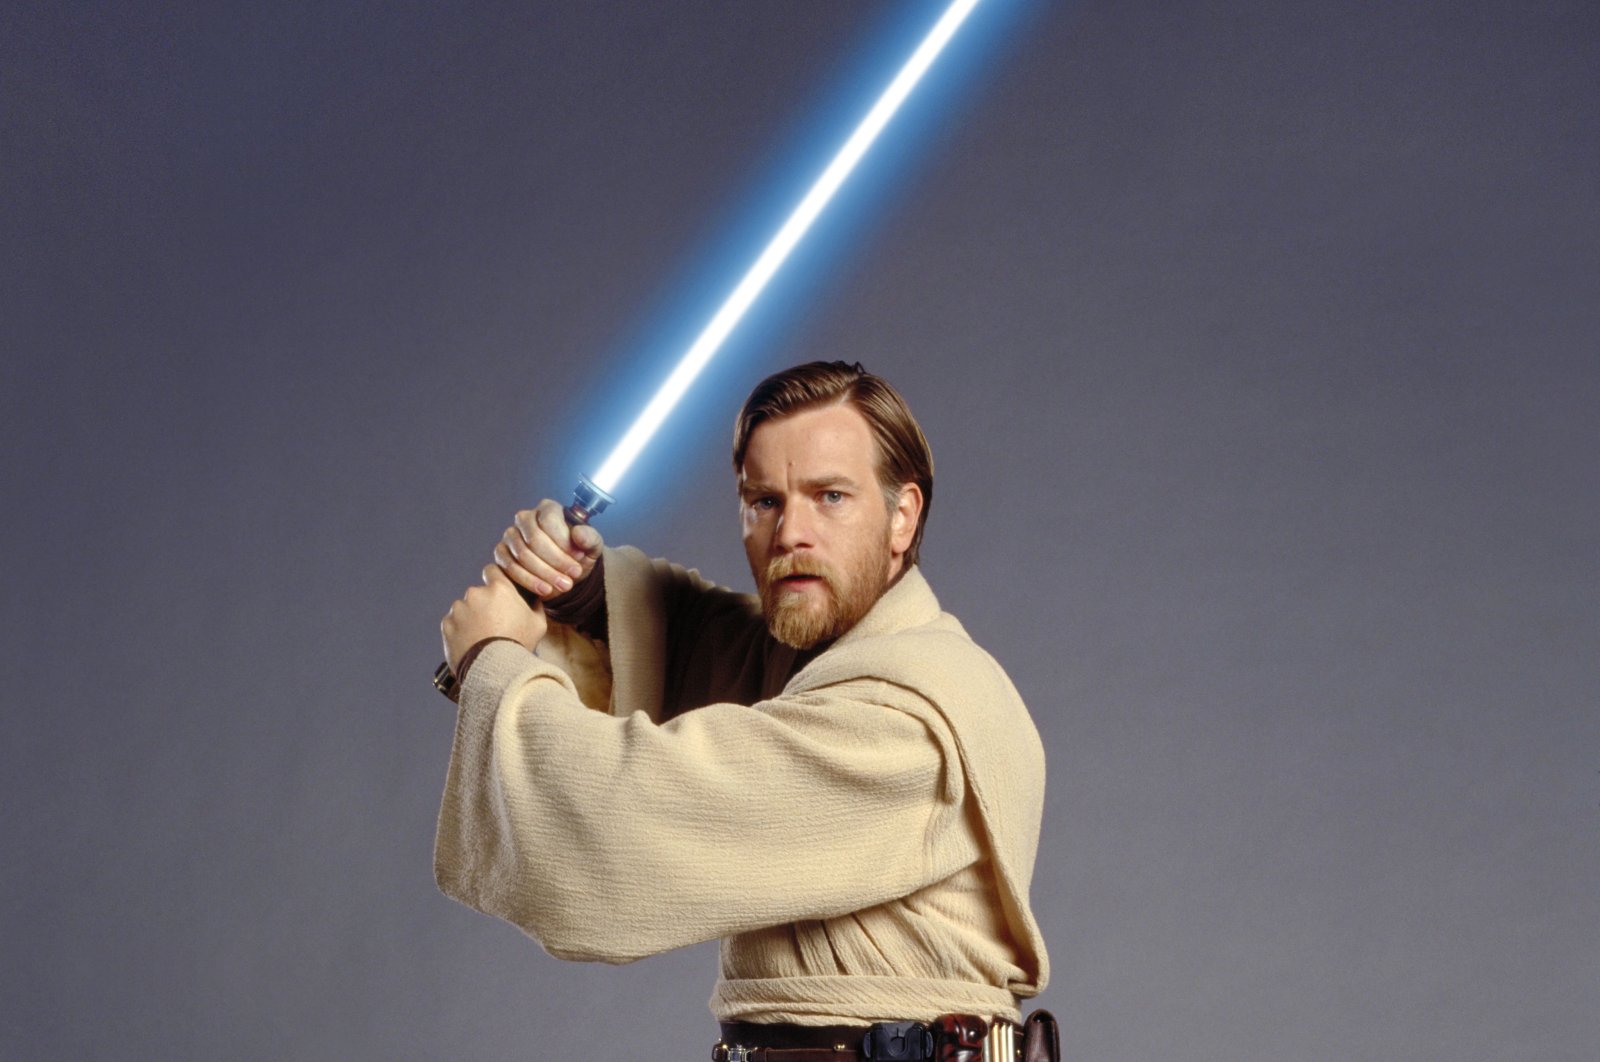 Trailer ‘Obi-Wan’ menunjukkan duel antara master Jedi, Darth Vader